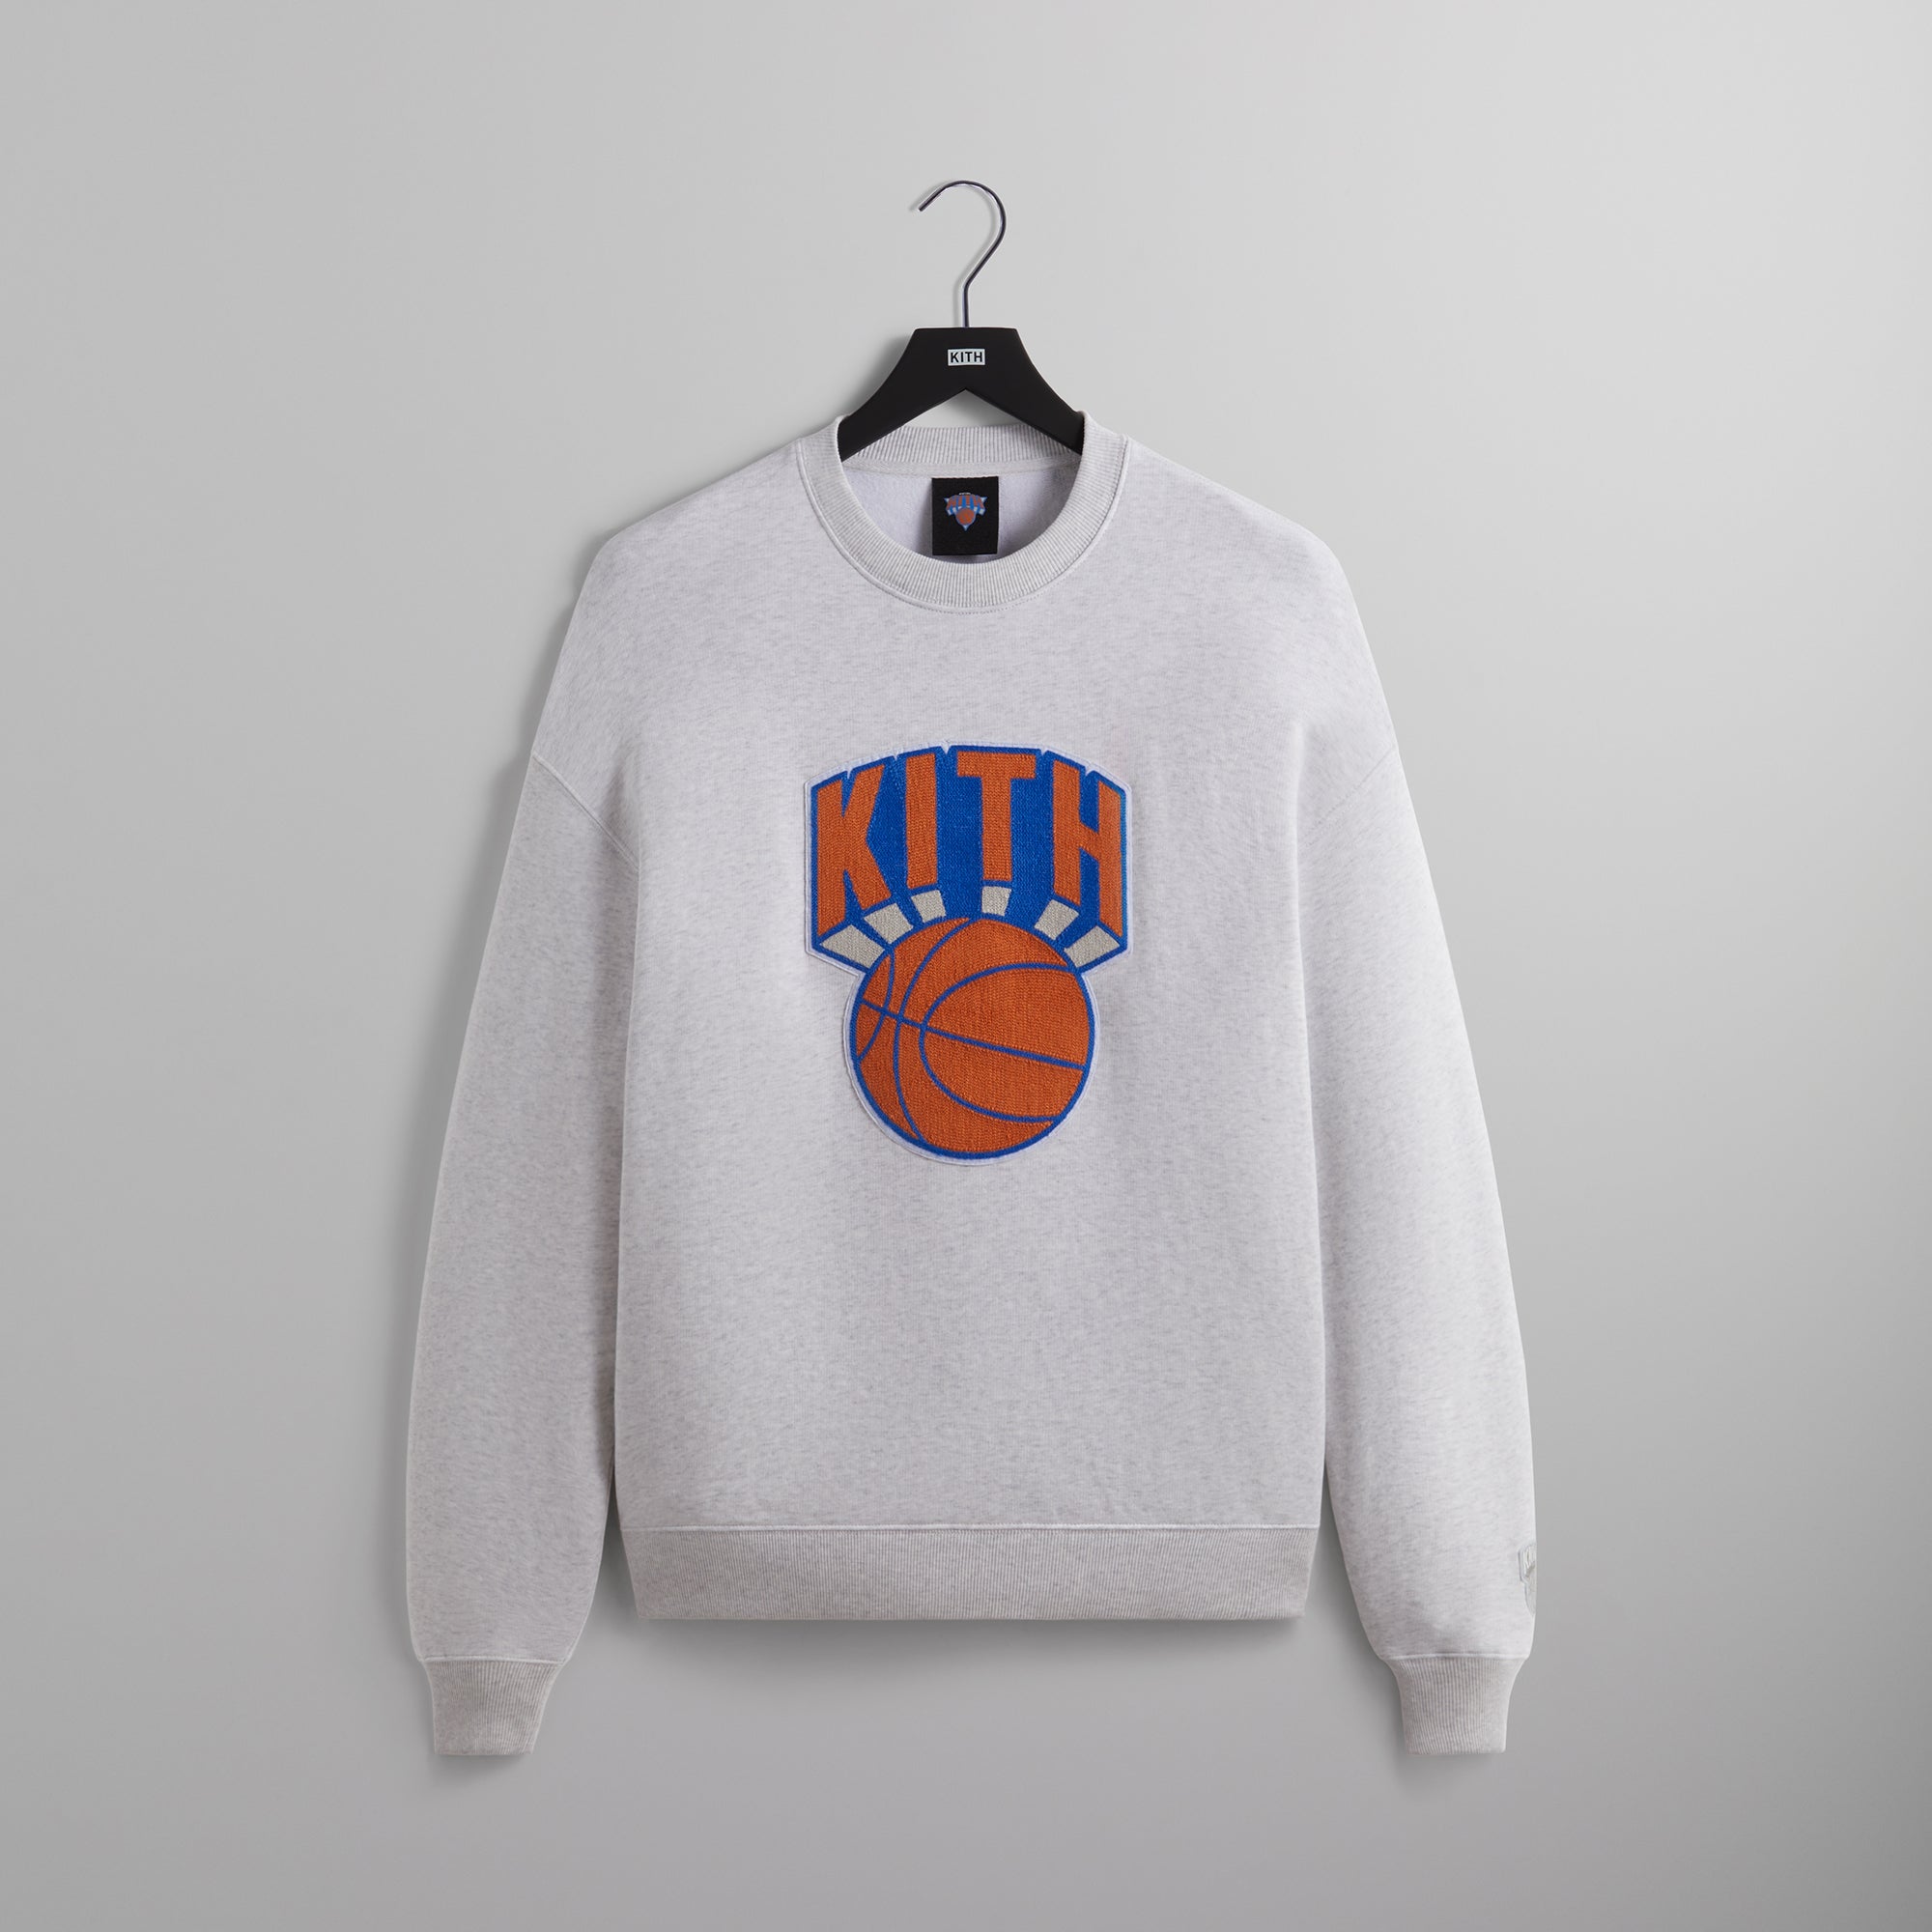 Kith for the New York Knicks Retro NY Nelson Crewneck - Light Heather Grey